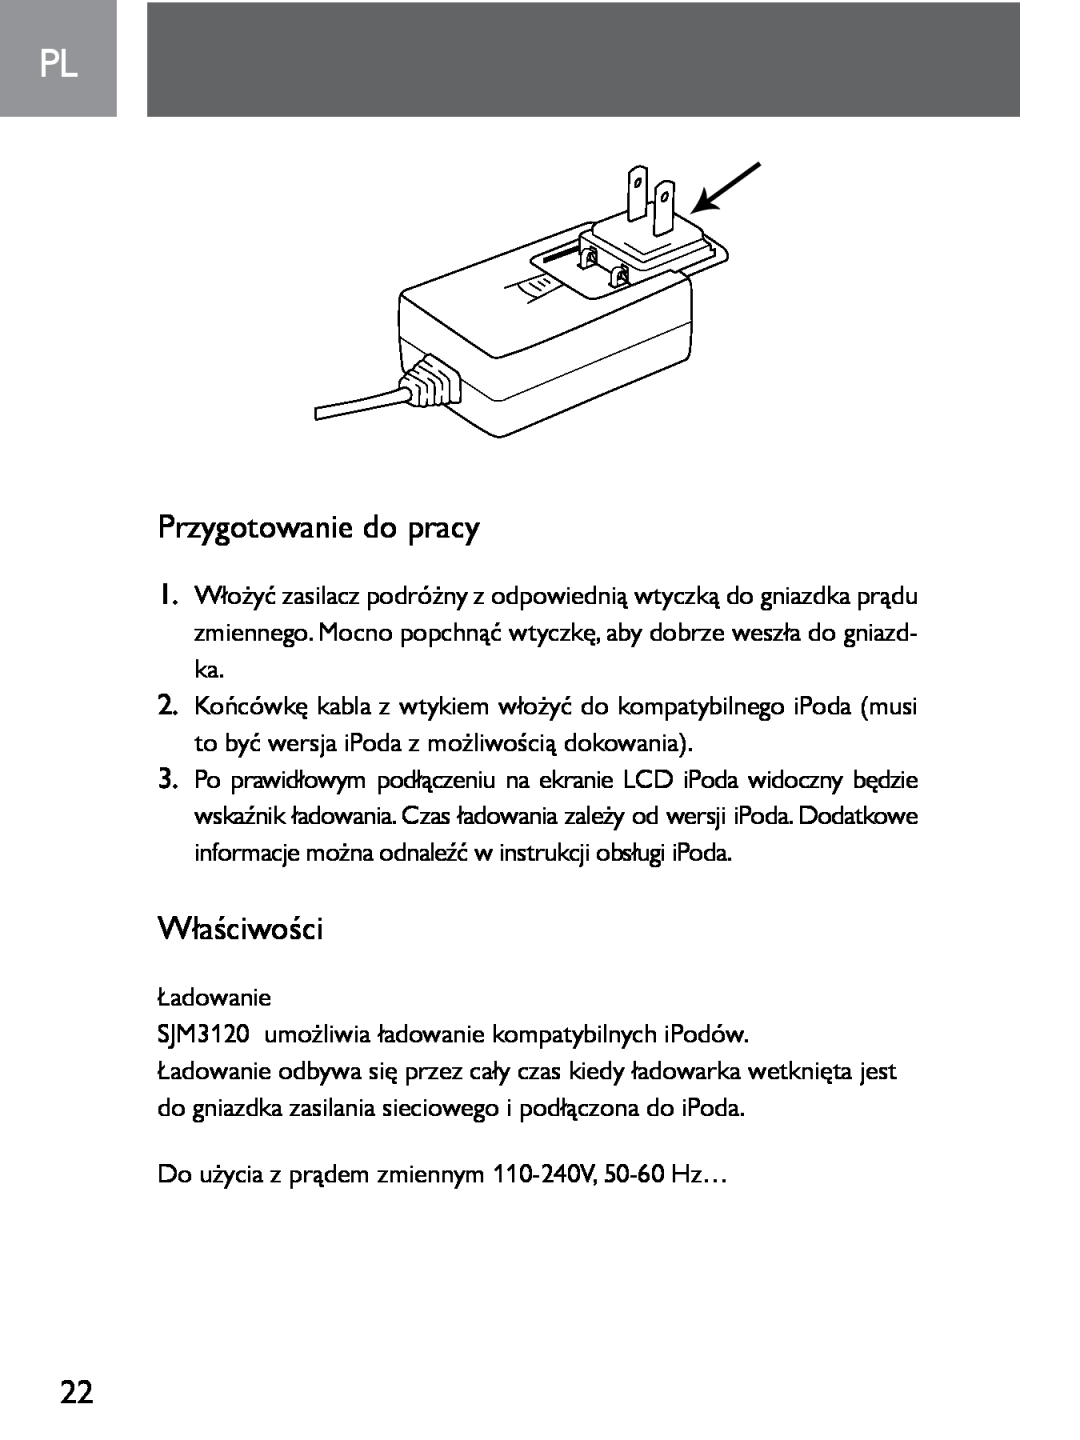 Philips SJM3120 user manual Przygotowanie do pracy, Właściwości 